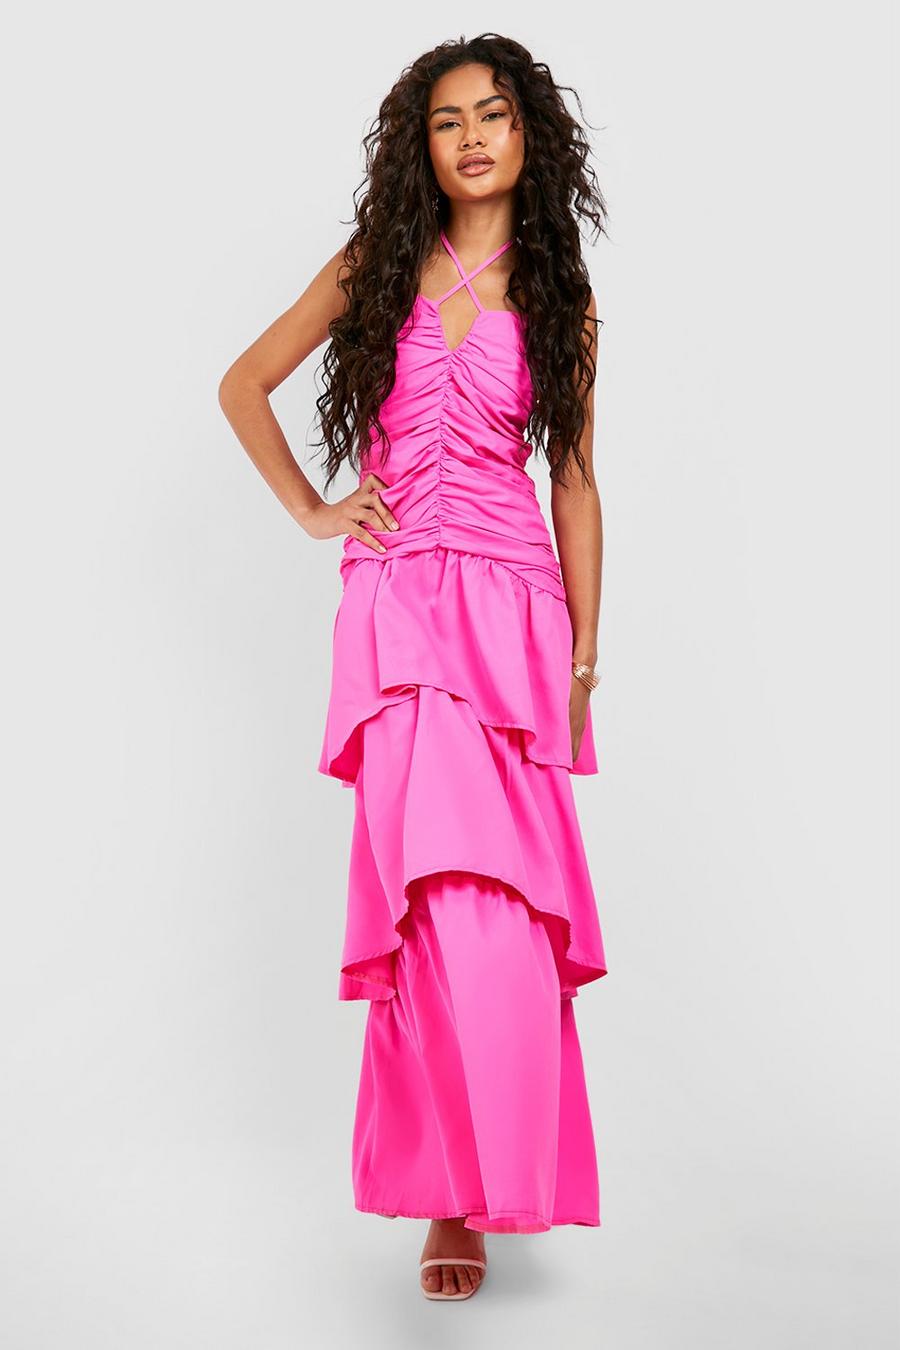 Bright pink Långklänning med rysch och volangkjol